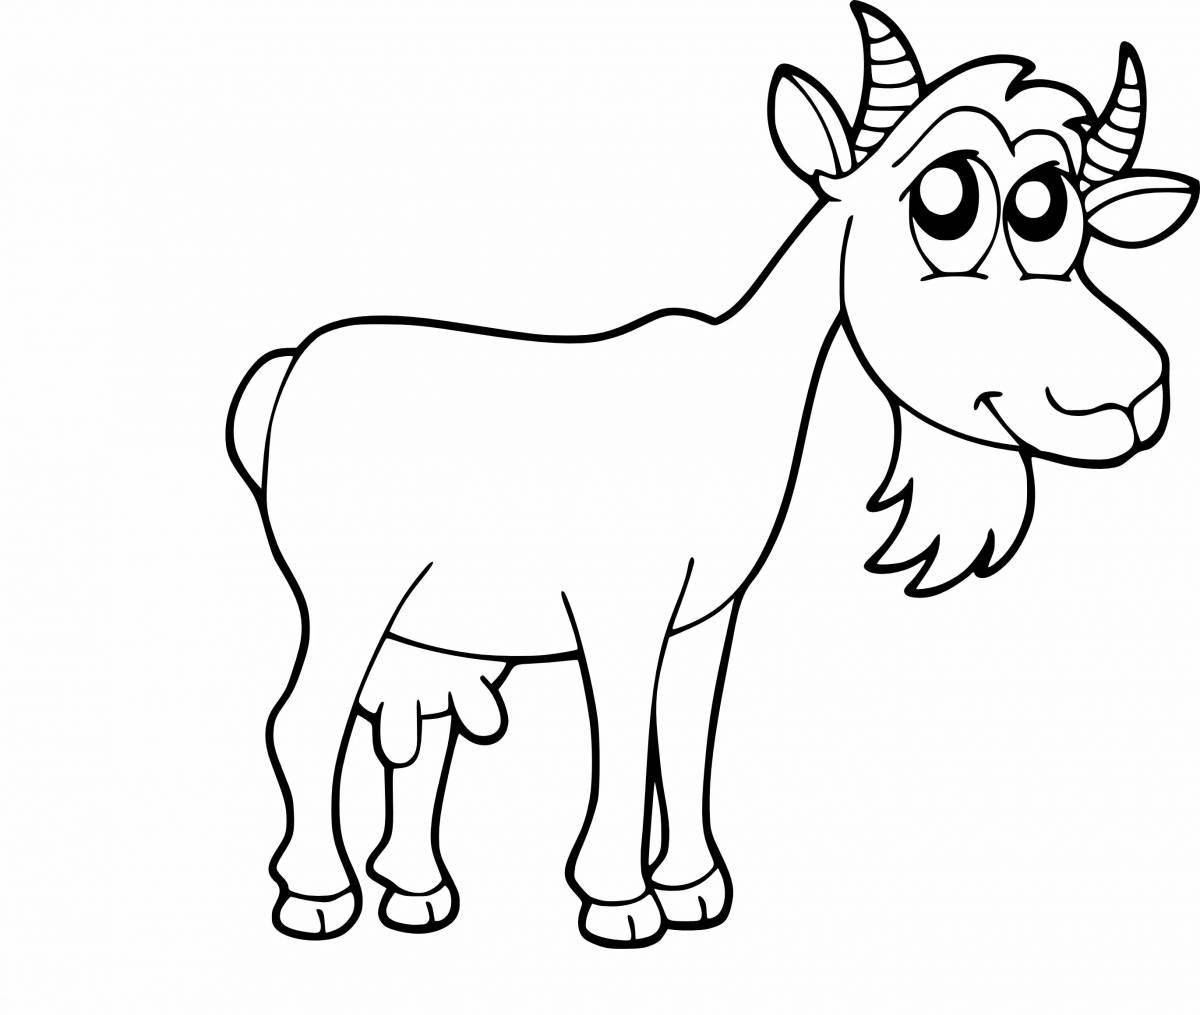 Сказочная страница раскраски коз для детей